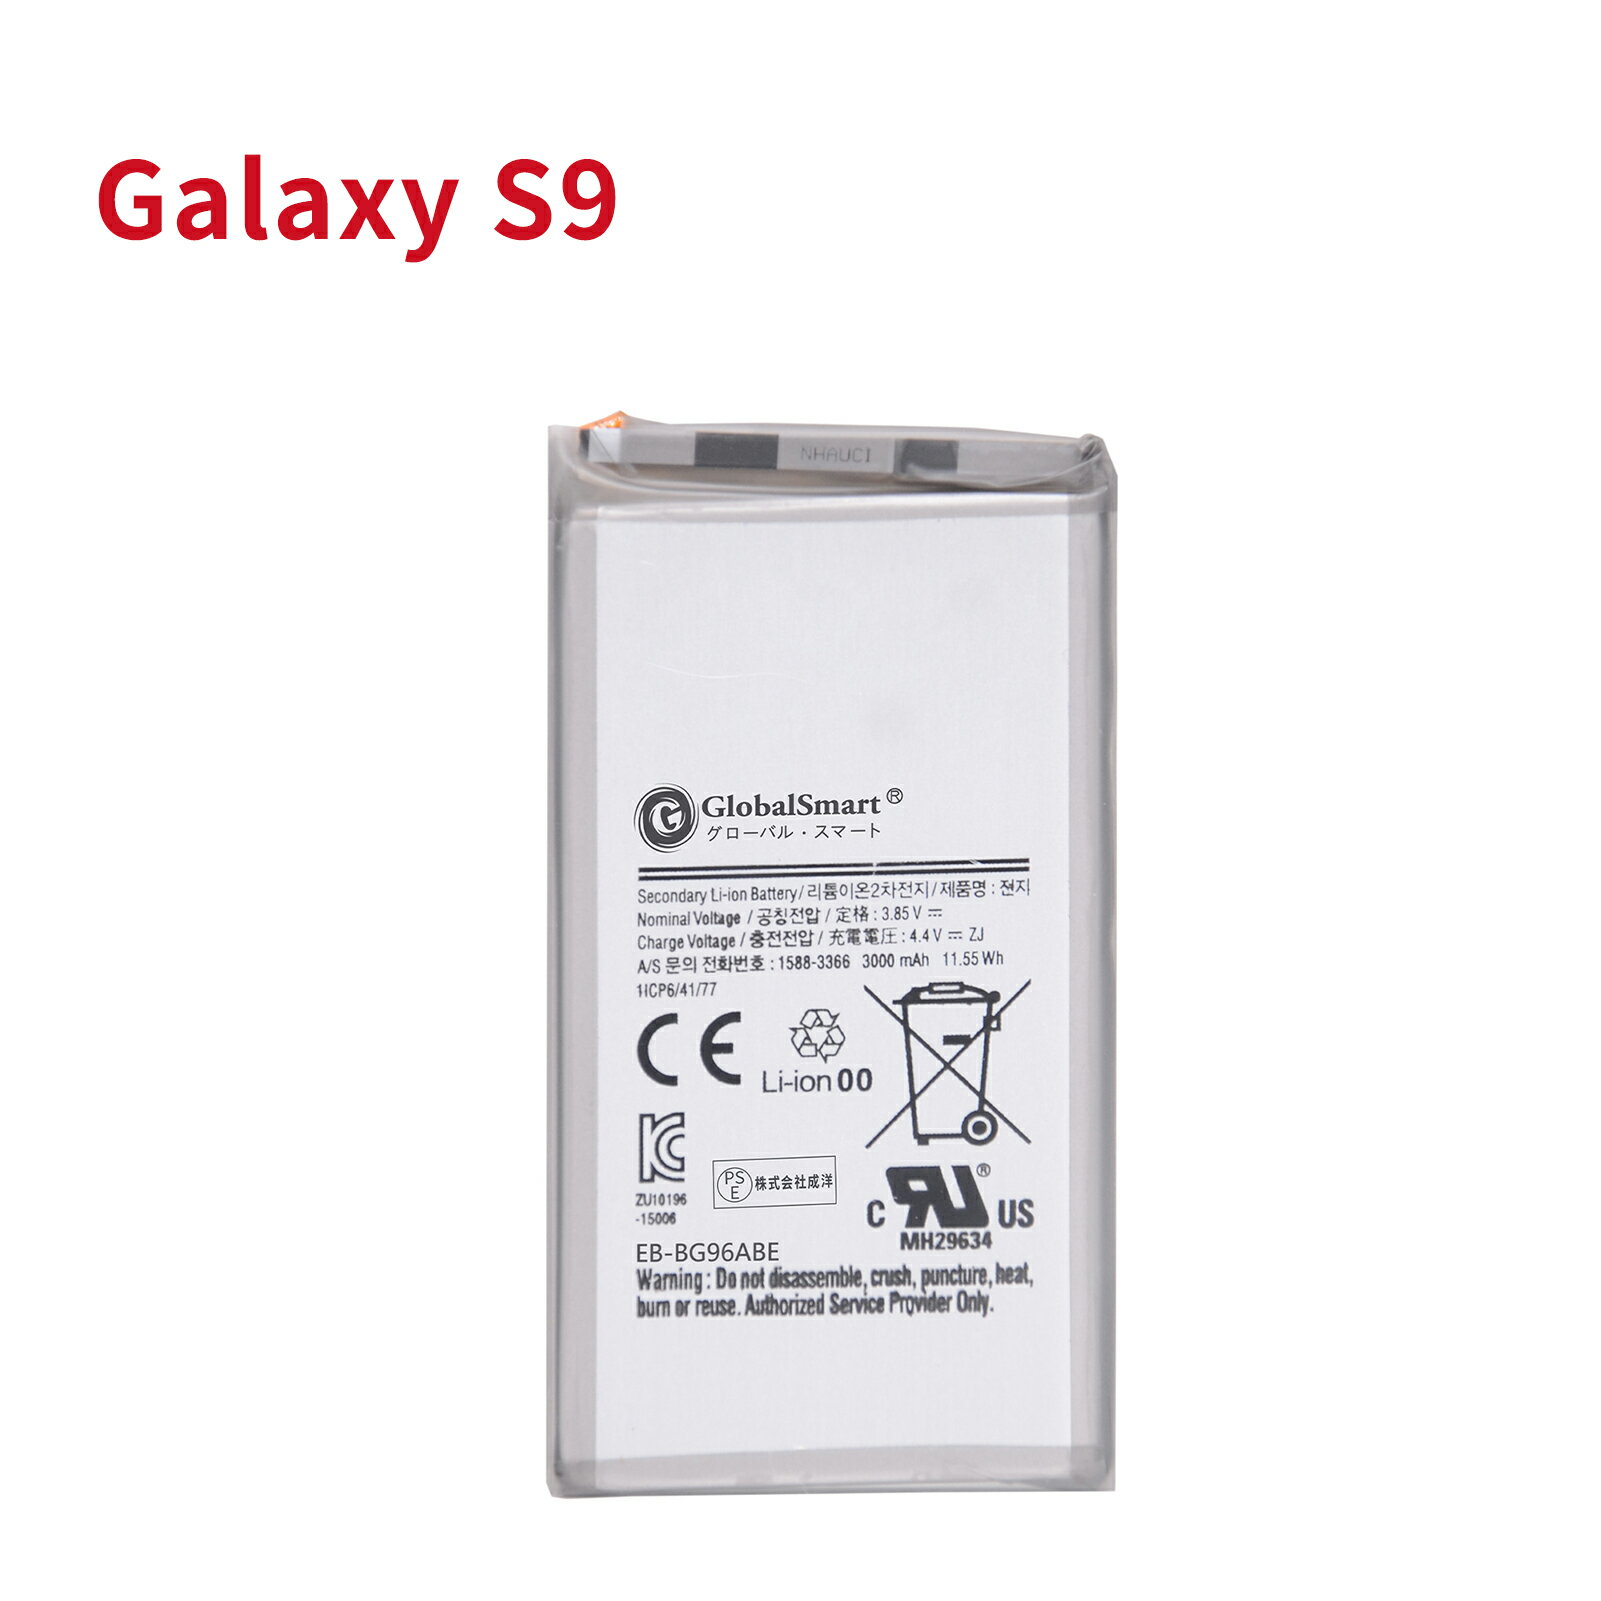 ●ブランド： Samsung ●電圧： 3.85V ●容量： 3000mAh ●種類： Li-ion リチウムイオンバッテリー ●対応機種： Samsung Galaxy S9，docomo SC-02K，au SCV38 SM-G960，SM-G960W，SM-G9600，SM-G9608，SM-G960F SM-G960N，SM-G960FD，SM-G960F/DS EB-BG960ABA，EB-BG960ABE ●商品モデル番号： SM-G960F WJW ●PSEマークの種類： PSE ●届け出事業者名： 株式会社成洋 ●性能： 内蔵高い性能ICチップを採用して、 互換電池に過充電保護、過放電保護、温度保護、ショート保護などの機能を持たせて、最大限でバッテリーの寿命を延長します。 日本国内PSE認証、EU ROHS認証、米国UL認証を取得しており、高性能TI社製ICチップ採用され、アップデートしても順調に使えます。 ※この商品は互換用バッテリーです。 注意点： ●同じ性能で金額の異なる商品がございますが、製造元部品が異なるためであり、性能には一切違いはありません。ご安心ください。 ●製造年月及び製品の世代更新でpse申告業者も変わっています。今届け出事業者は以下となります：トヨバンク株式会社、株式会社成洋、株式会社神州。もしくは、白/黒(PSE認証マークは別の箇所にシールで添付)の2色を区別している。品質的には問題ございませんので、ご安心ください。 ●多店舗で同時に販売するため、商品が一時的に欠品となる場合がございます。他の契約倉庫から出荷の手配を依頼することになり、発送日がまだ未確定で、ハッキリとご案内できませんので、弊社の出荷予定時間を参考にしてください。 ●当店でご購入された商品は、日本国内からお客様のもとへ直送されます。 ●一部商品は国内の提携先倉庫から配送されます。 ●個人輸入される商品は、全てご注文者自身の「個人使用個人消費」が前提となりますので、ご注文された商品を第三者へ譲渡転売することは法律で禁止されております。 ●国内配送の商品は国内でのお買い物と同じく消費税が発生いたします。 ●日付指定がなければ最短で出荷します。 ●本体機種の型番と純正バッテリーの型番は両方が一致していない場合、使用できない可能性があります。 ●ご購入前に、何かご不明点やご希望などございましたら、どうぞお気軽にお問合せ下さいませ。